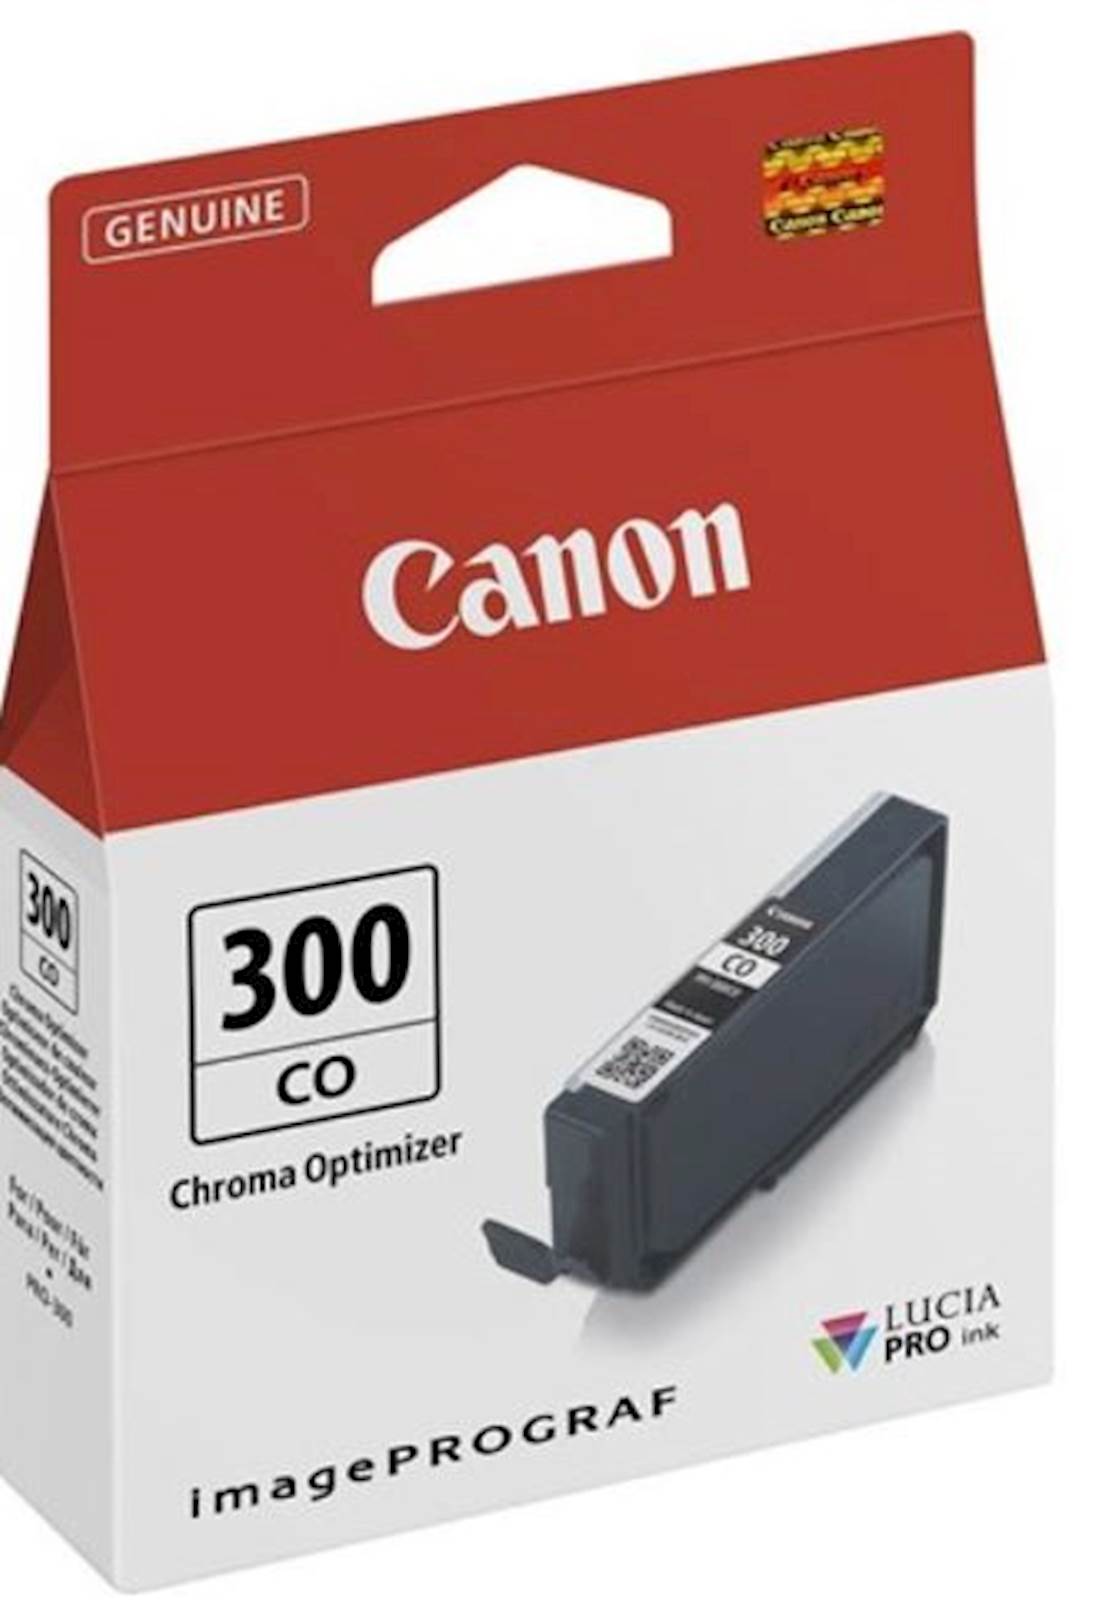 Tinta CANON PFI-300 Chroma Optimizer